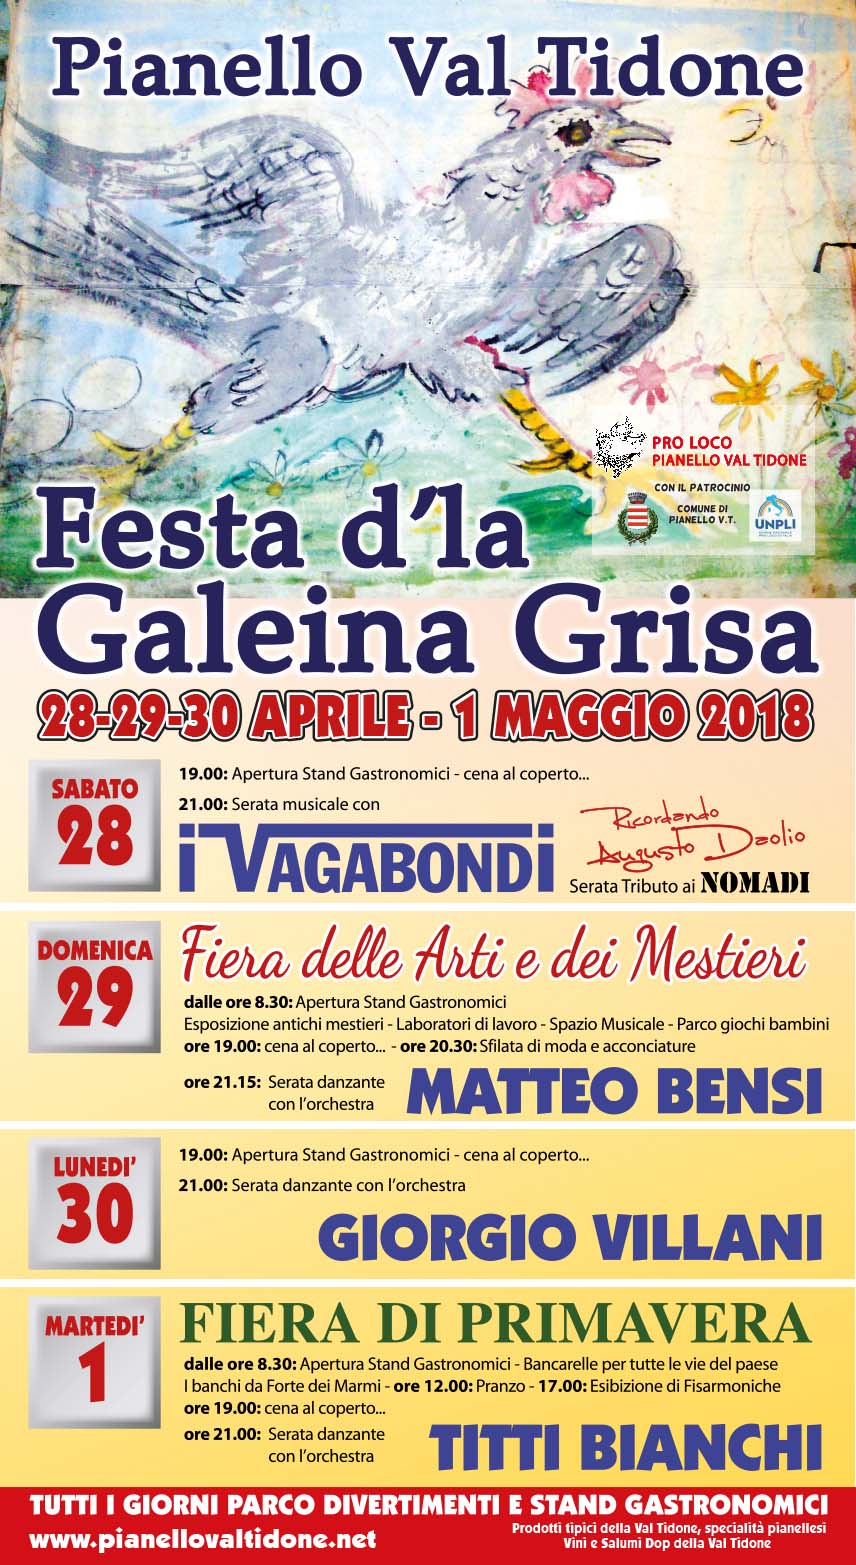 Festa d'la Galeina Grisa 2018 Pianello Val Tidone